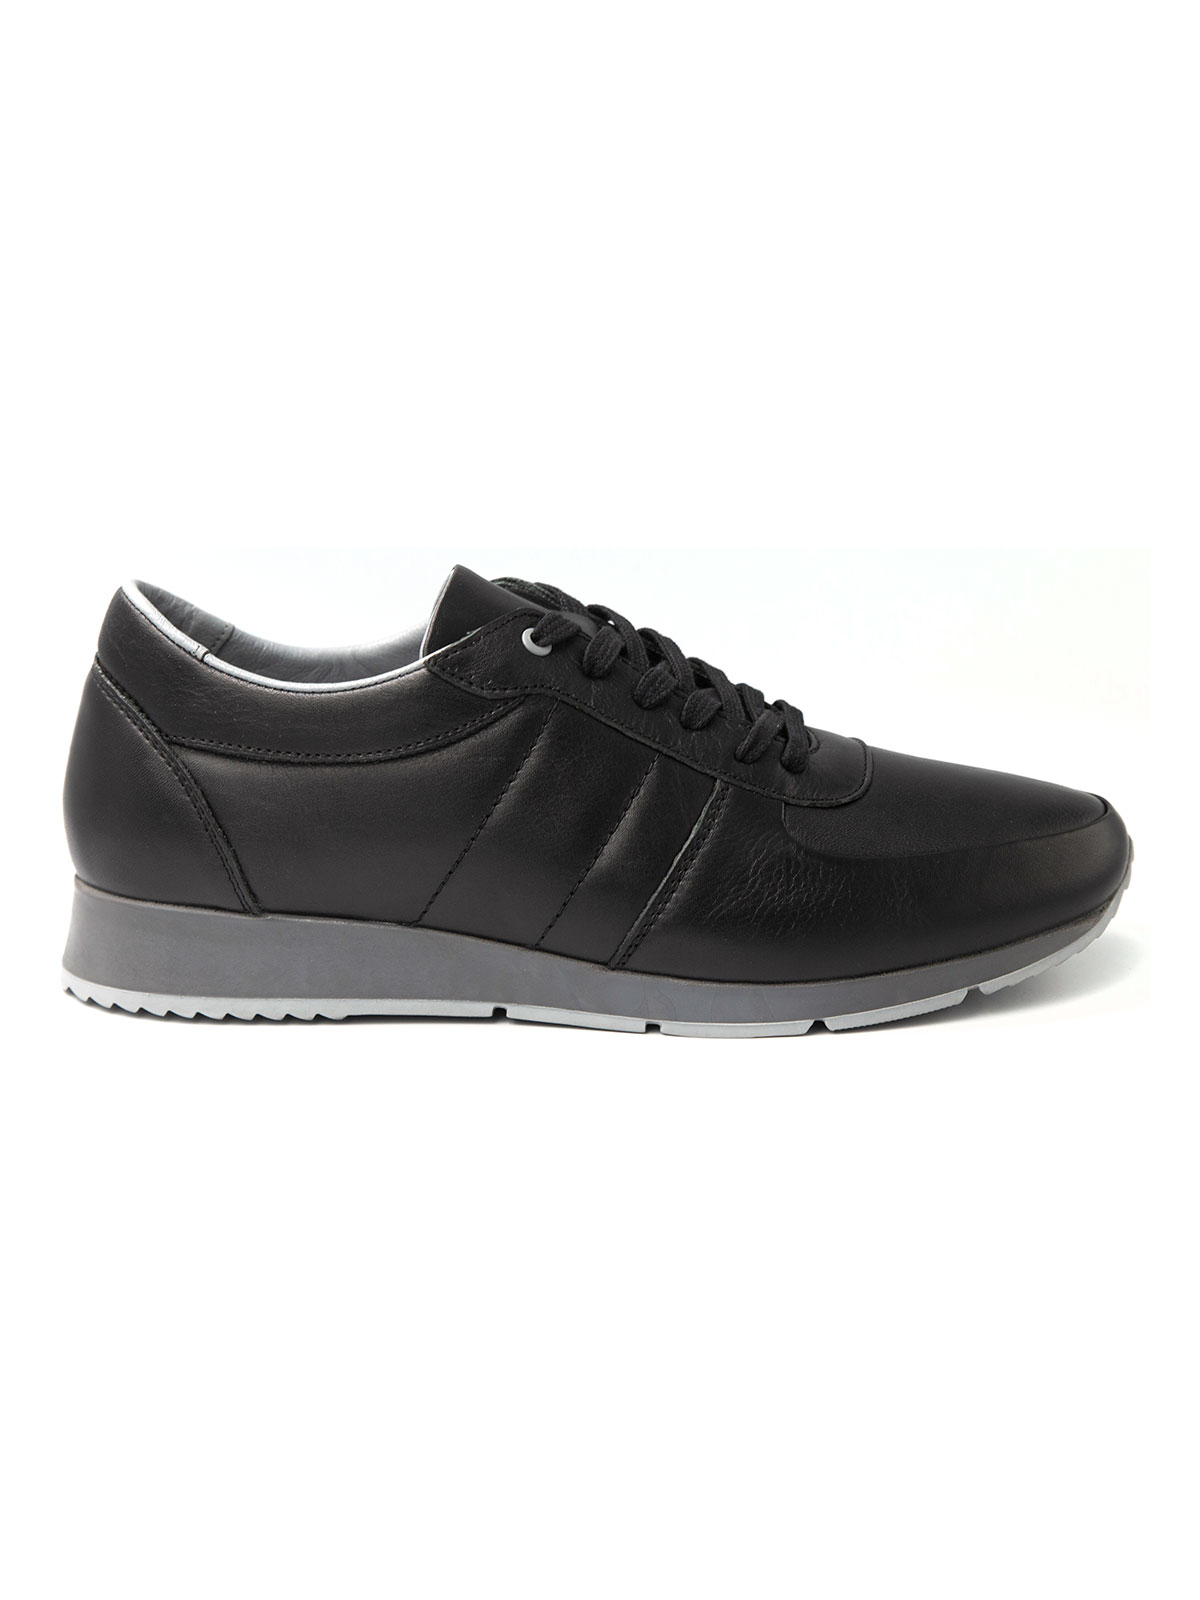 Αθλητικά μαύρα δερμάτινα παπούτσια - 81100 - € 41.62 img3